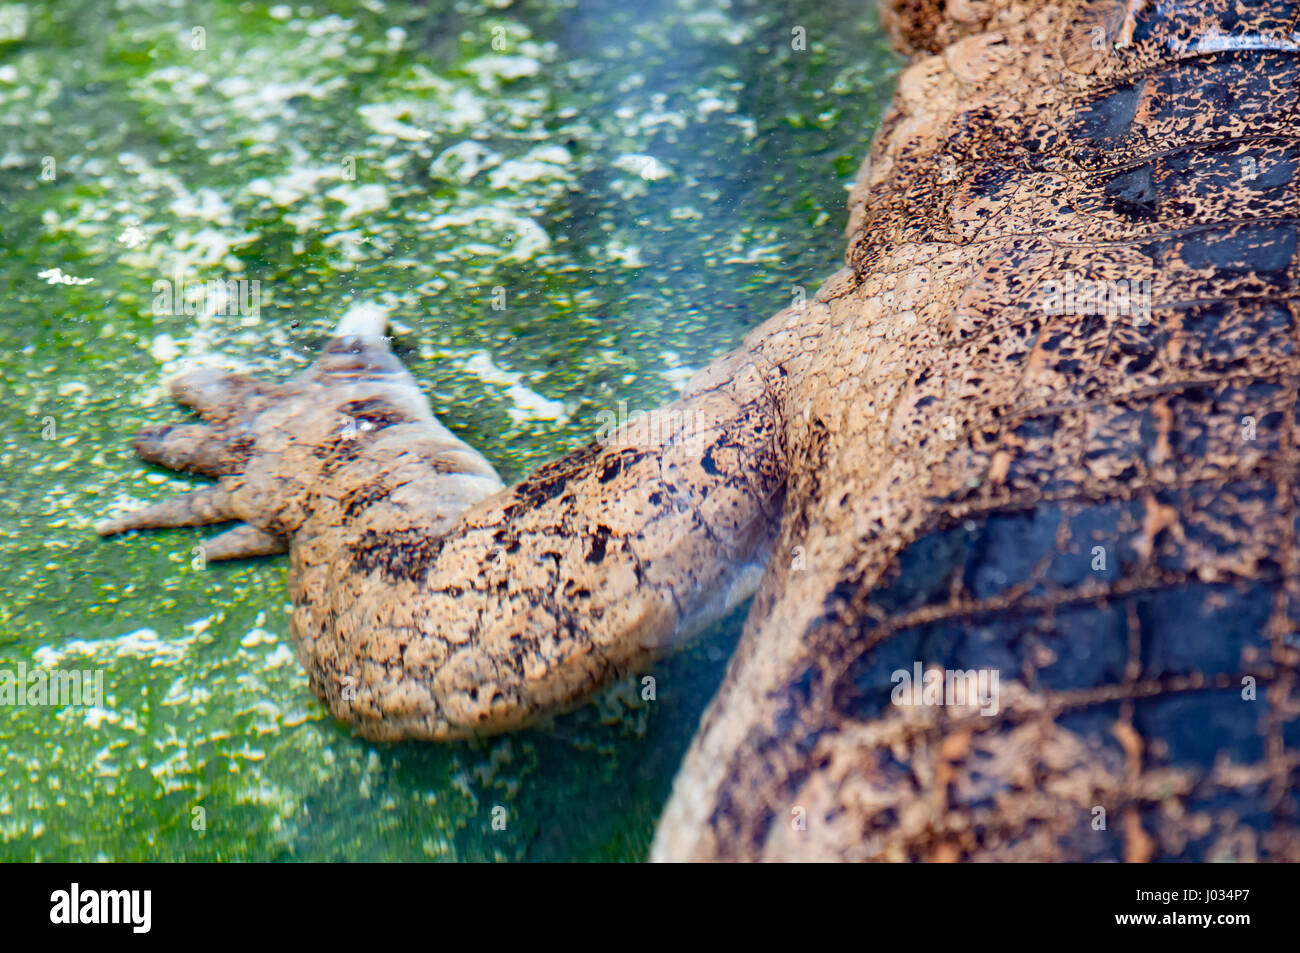 La metà superiore del coccodrillo americano (Alligator mississippiensis) underwateri in cattività Foto Stock